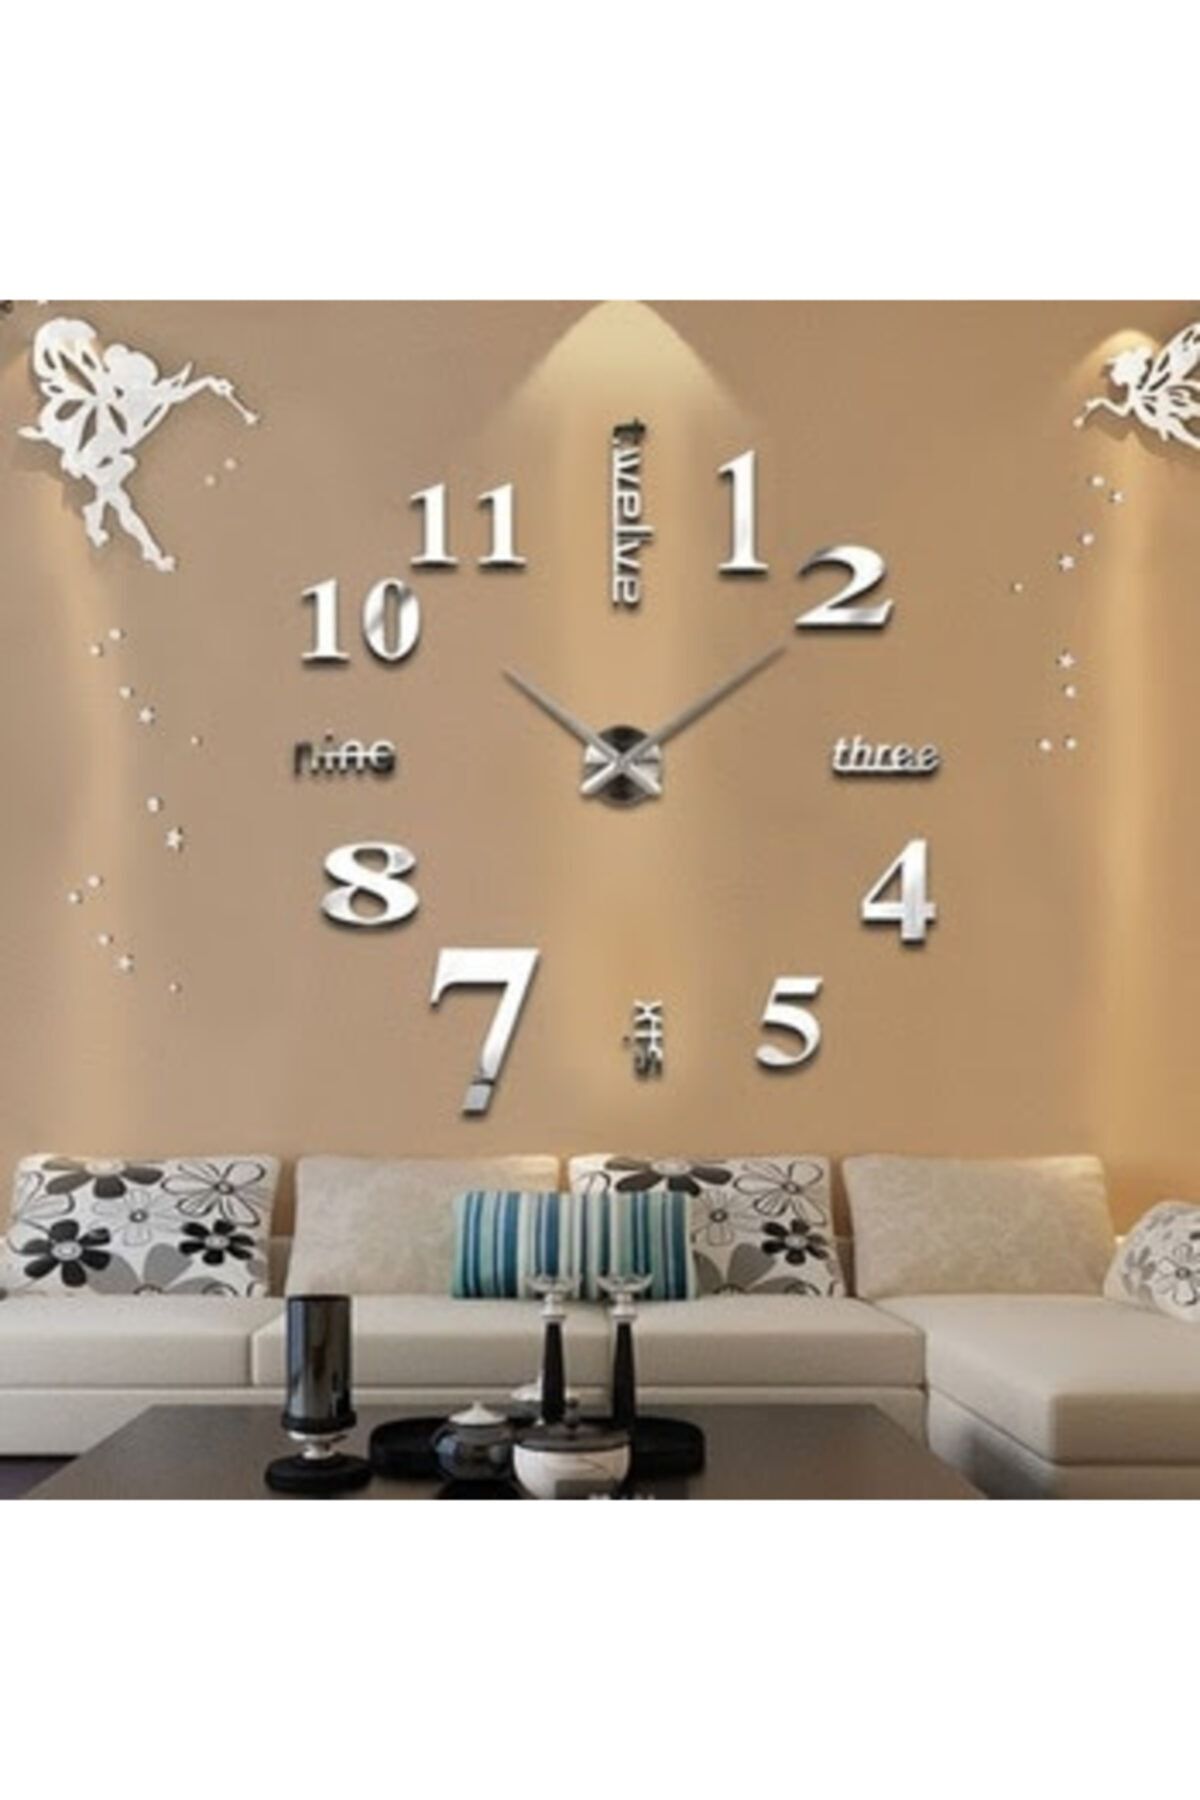 Часы настенные отдельные. Валберис часы настенные 3 д. Часы в гостиную настенные. Часы настенные необычные. Интерьерные часы на стену.